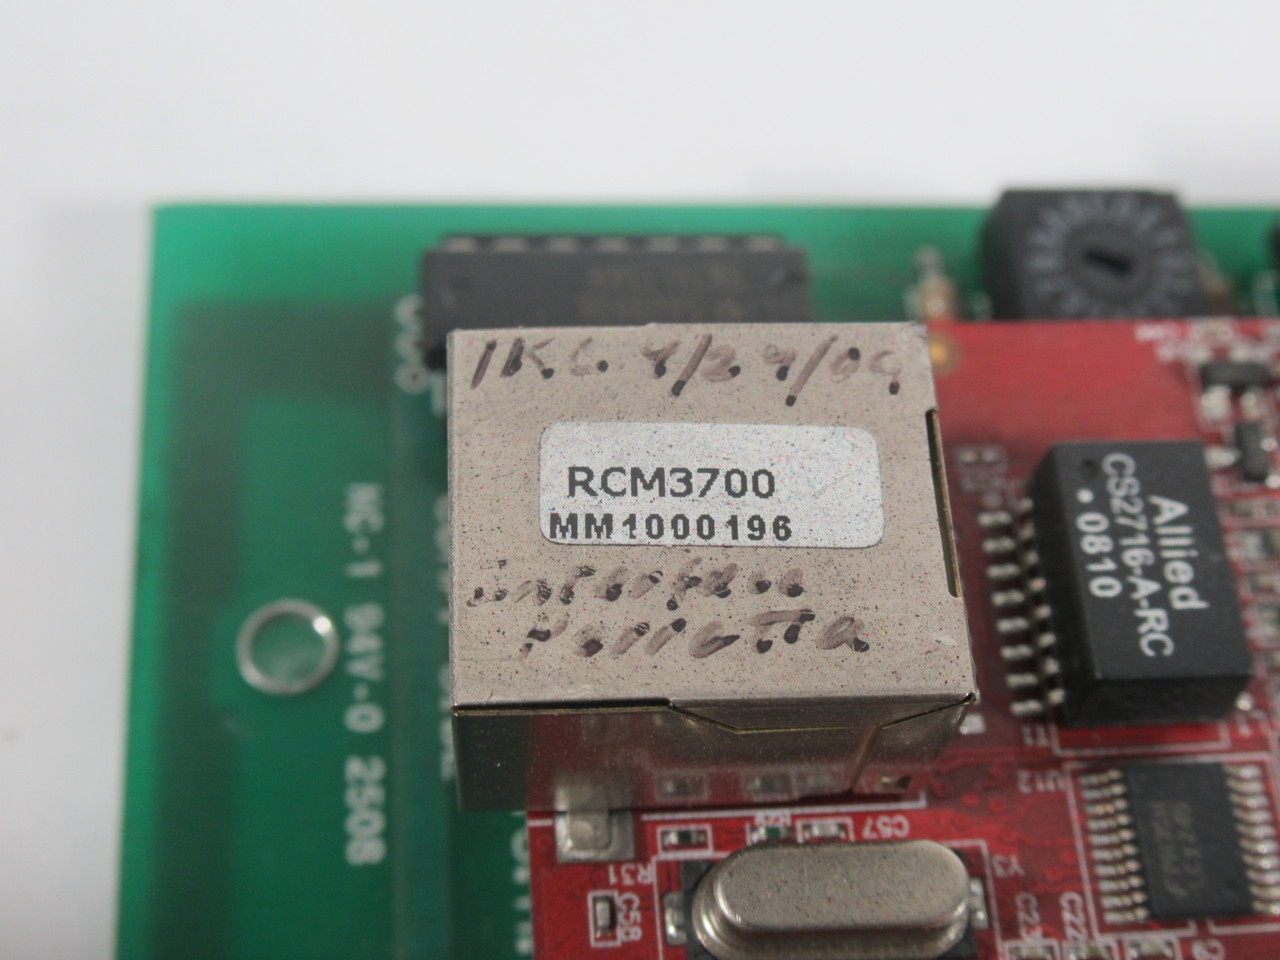 Perretta Graphics ASE00386 PC Board Rev: C C/W RCM3700 *PIN DAMAGE* USED